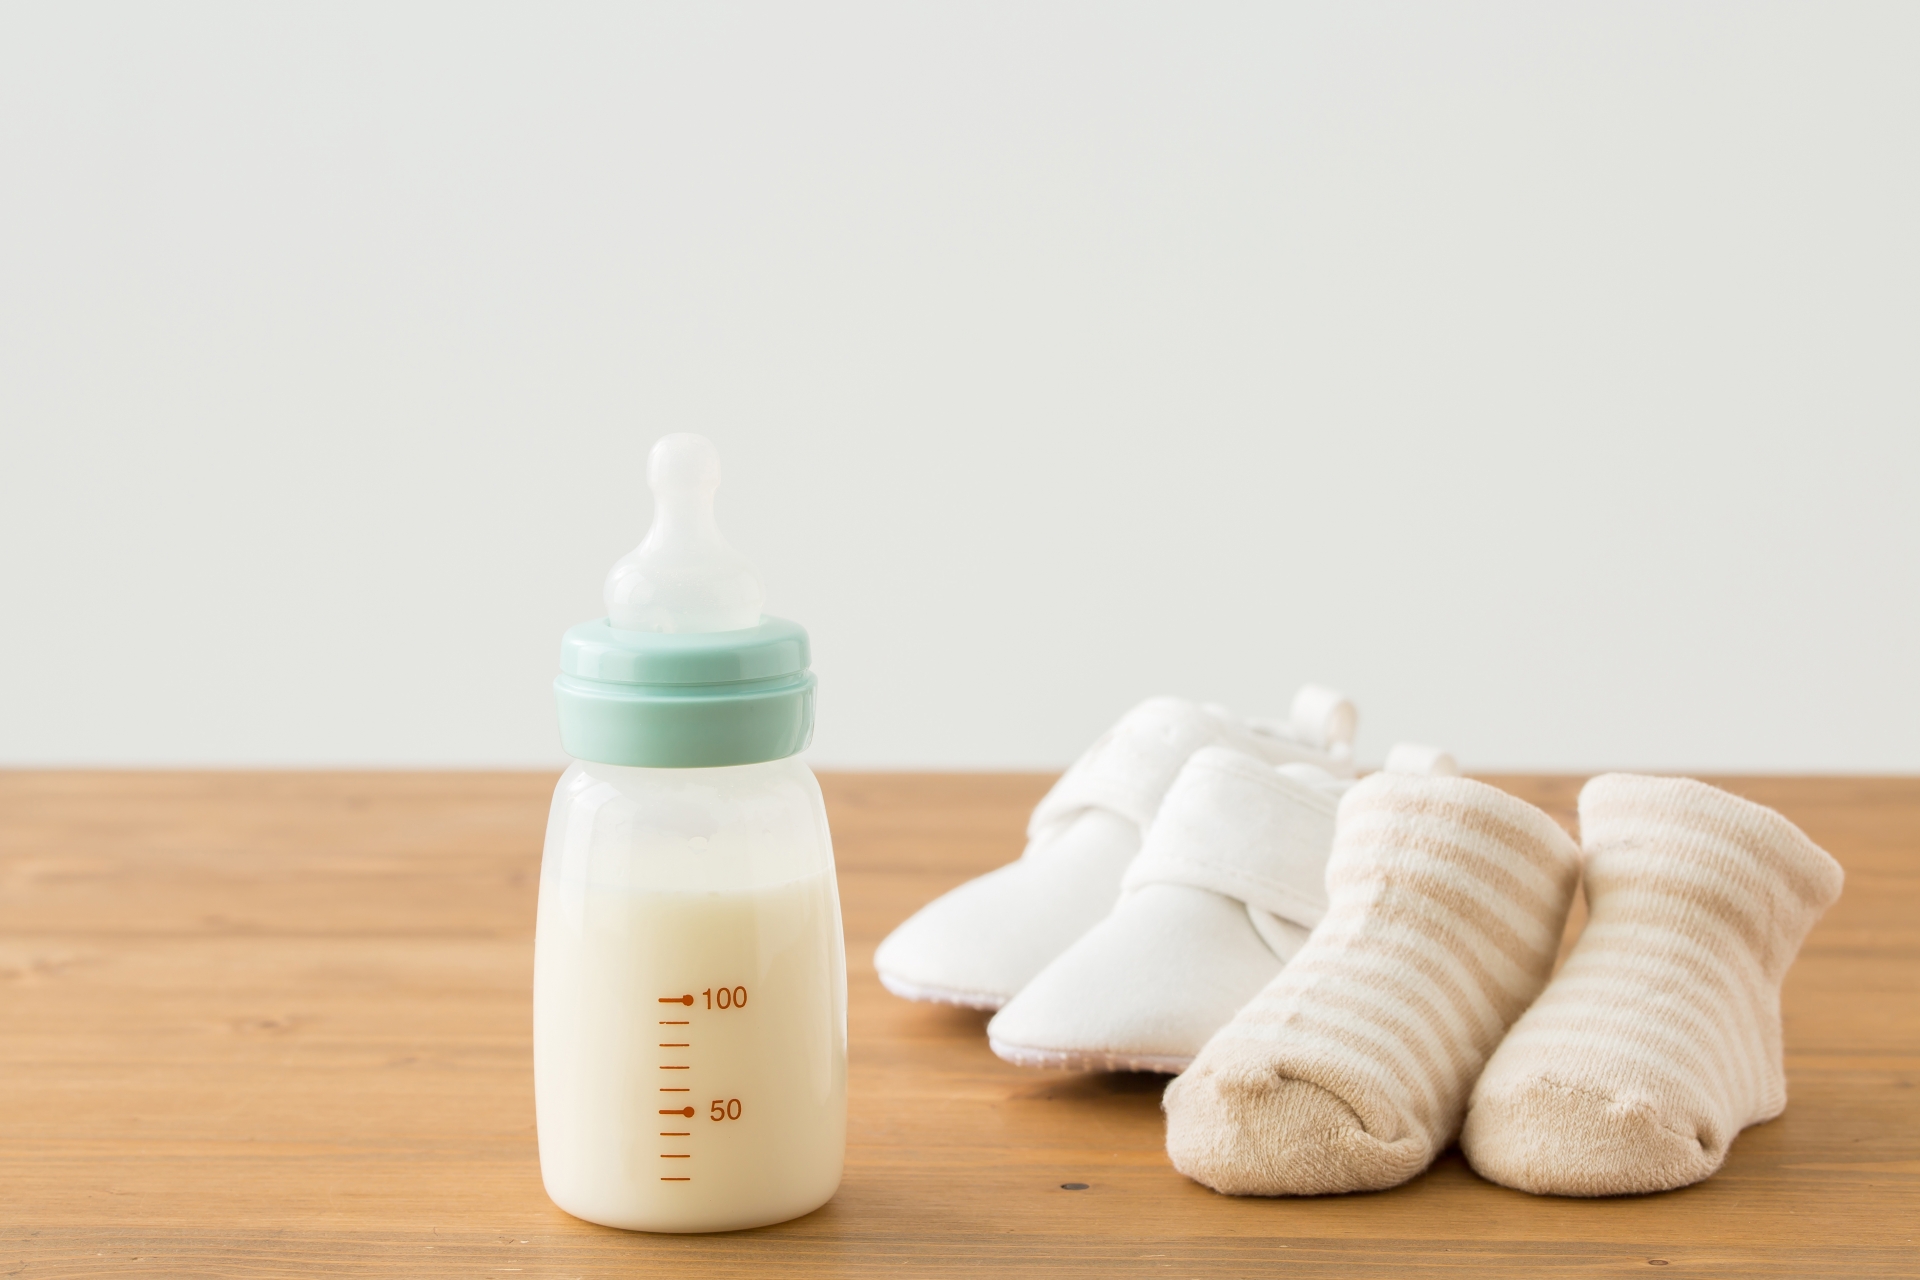 ミルクと母乳の混合育児をする場合のミルクの足し方や方法とは